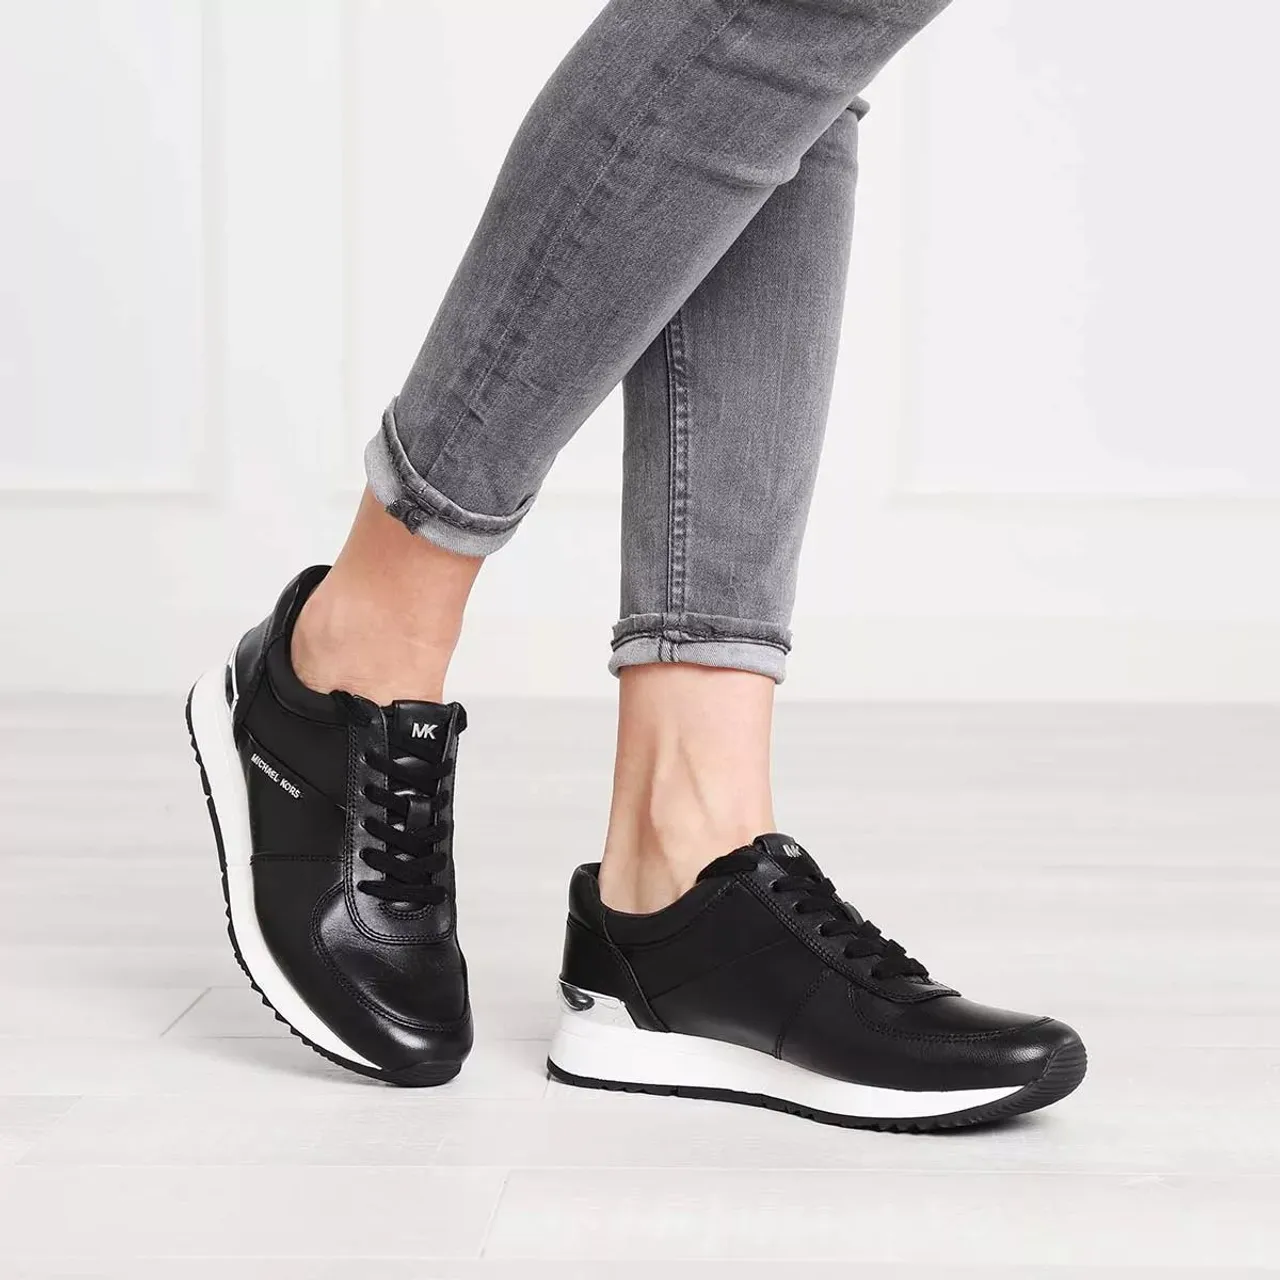 Michael Kors Sneakers - Allie Trainer - black - Sneakers for ladies